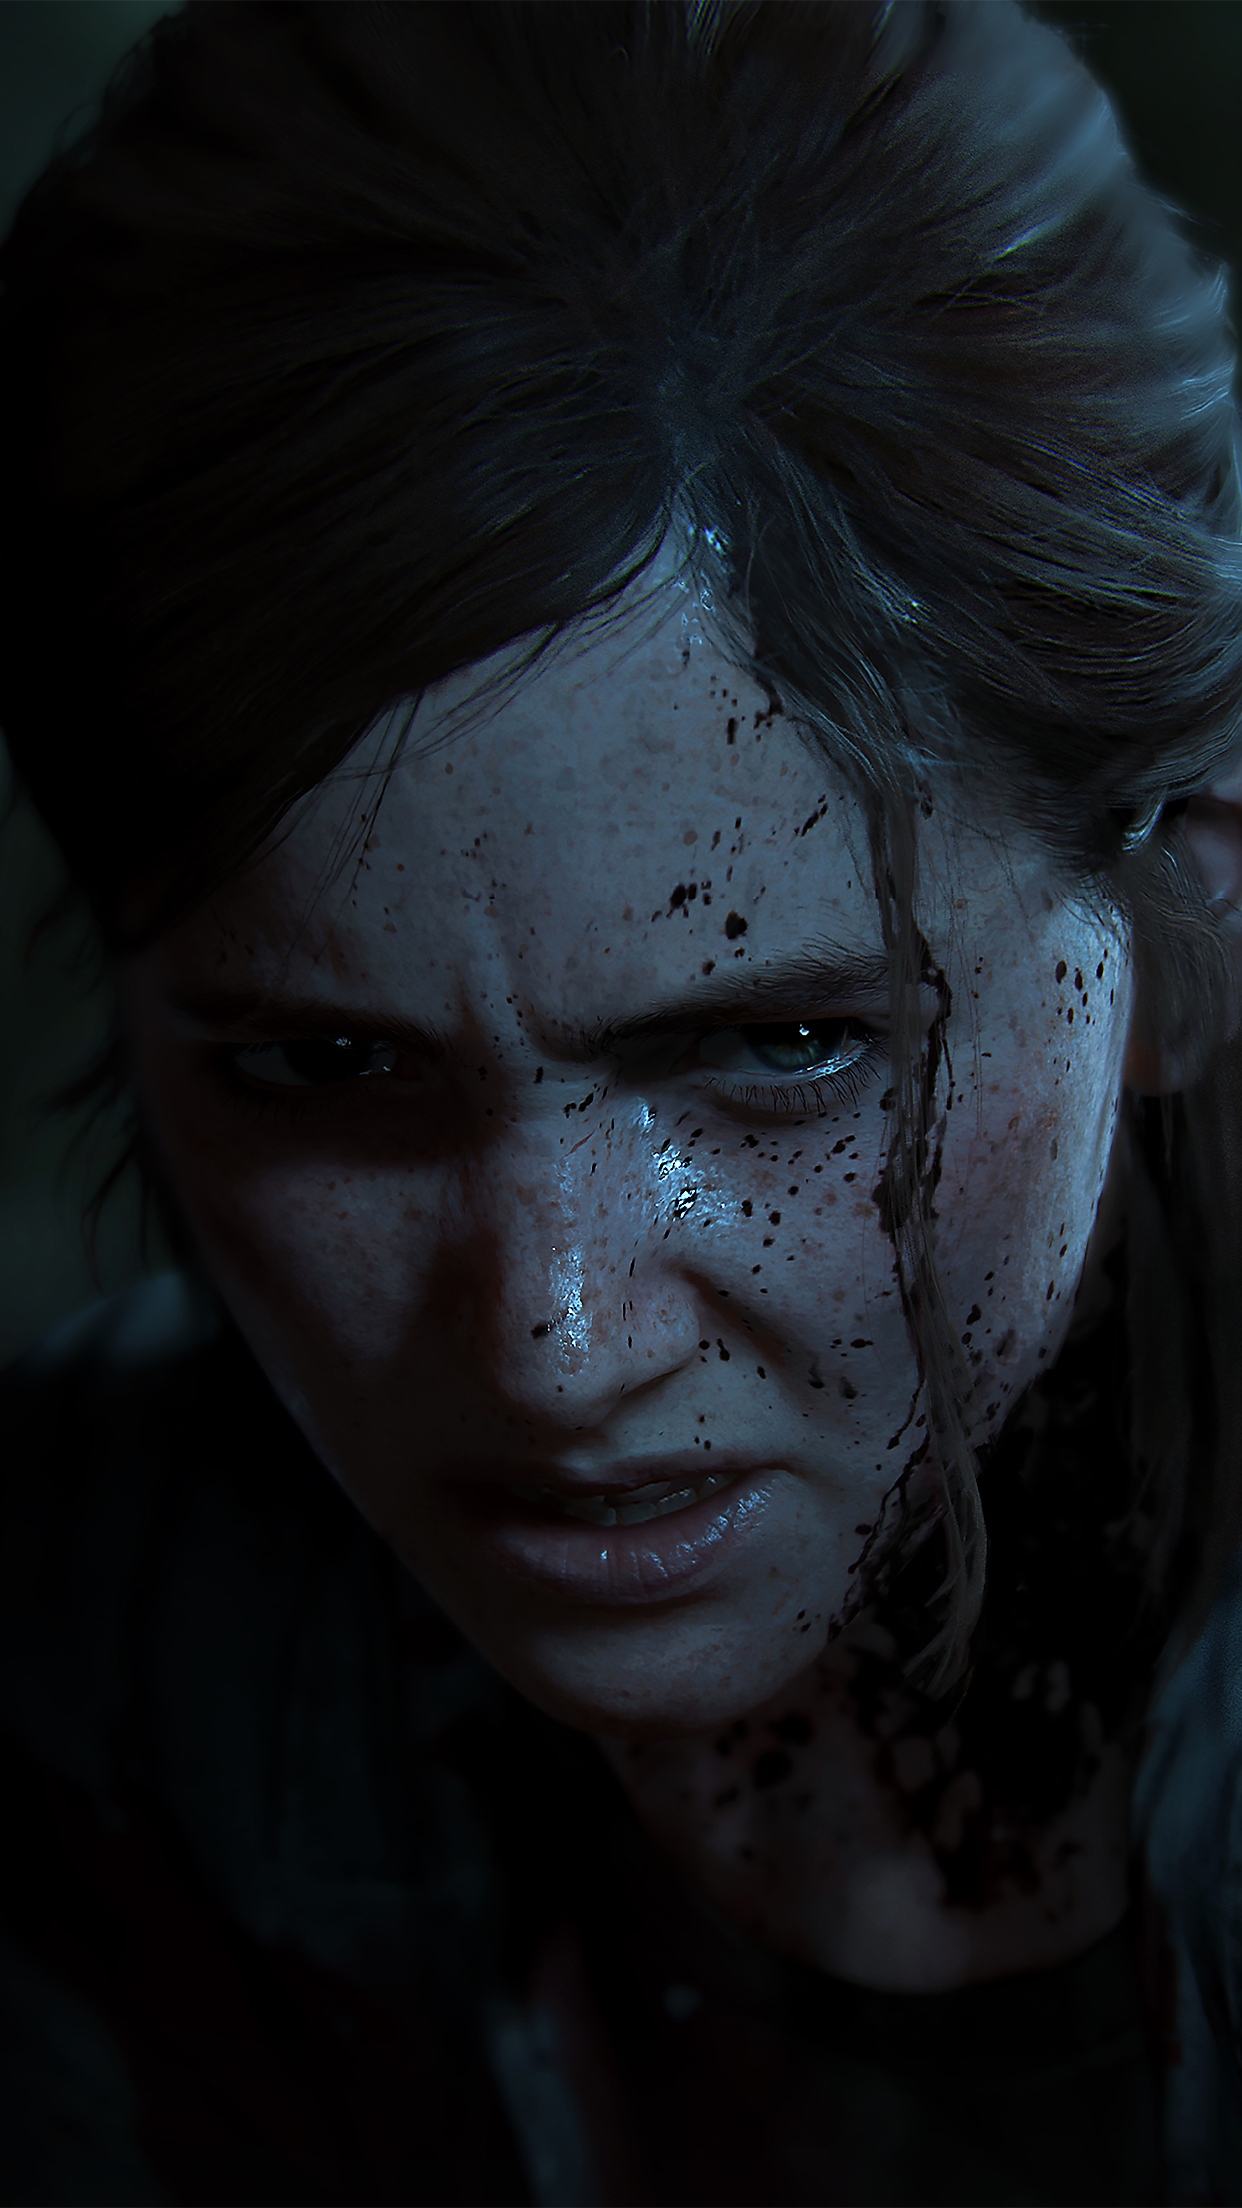 الصورة الفنية الأساسية للعبة The Last of Us Part II - جوال iPhone 8 Plus